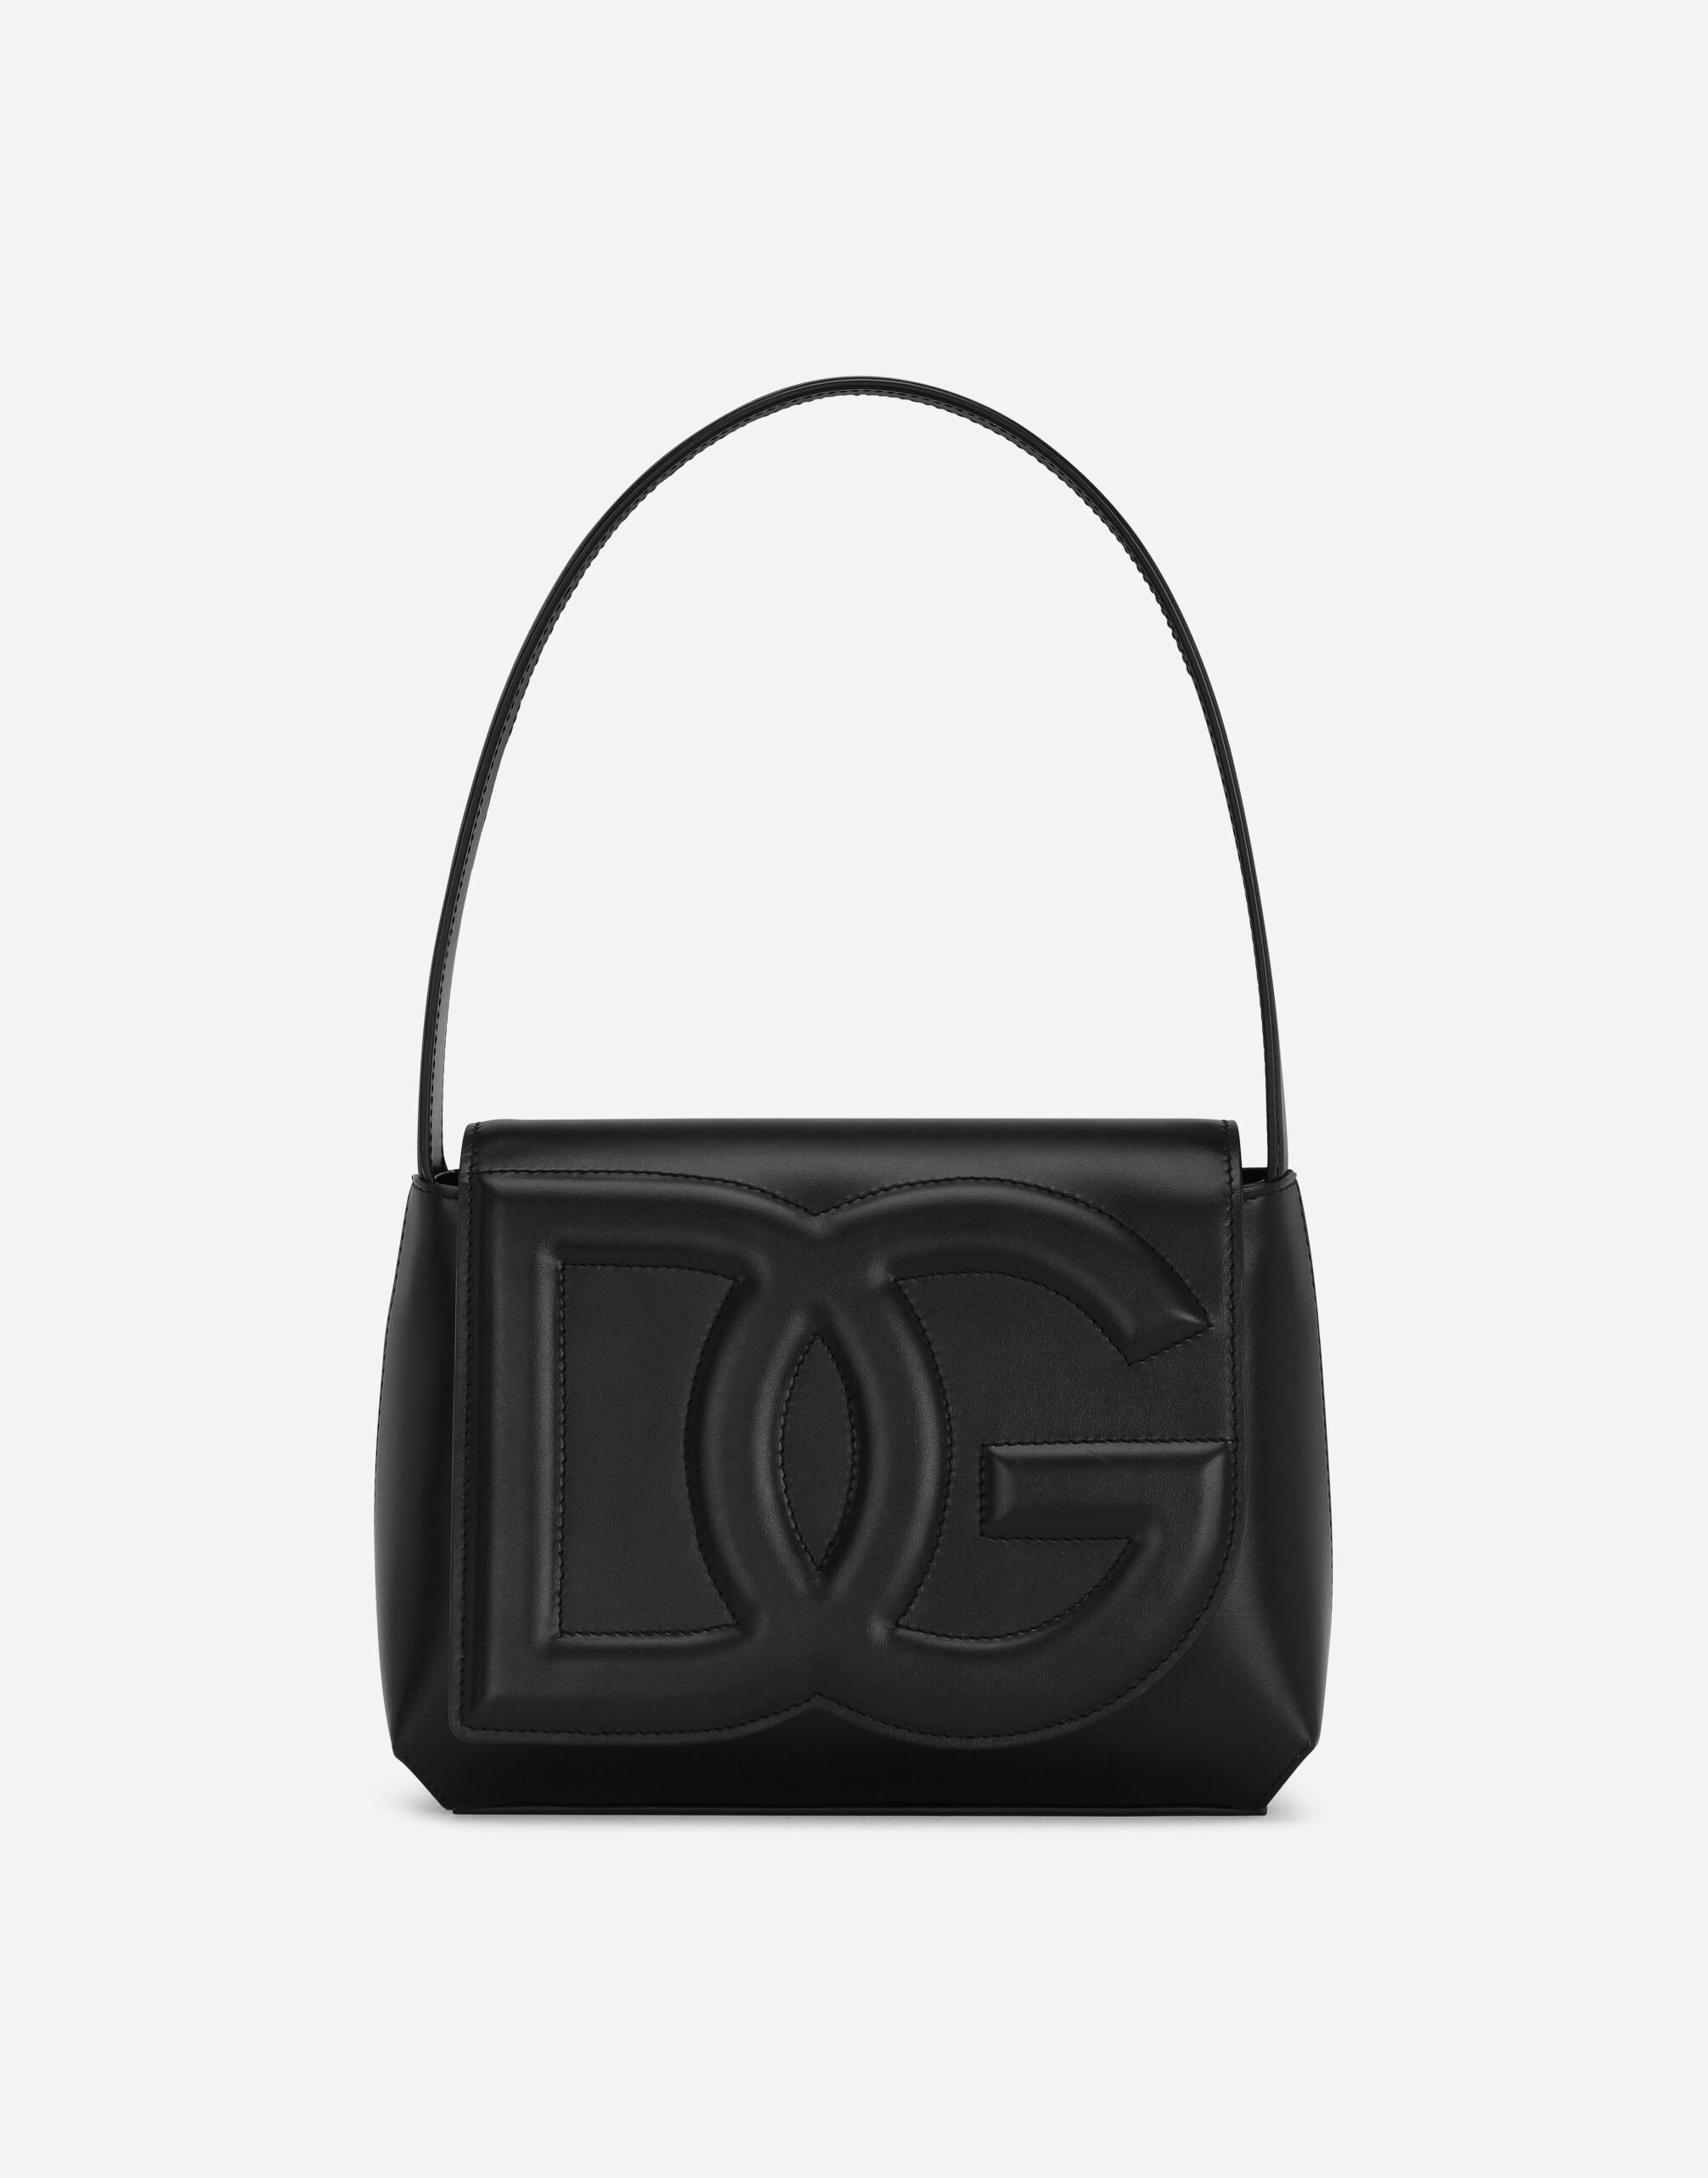 Dolce & Gabbana DG Logo Bag shoulder bag Black VG2298VM587